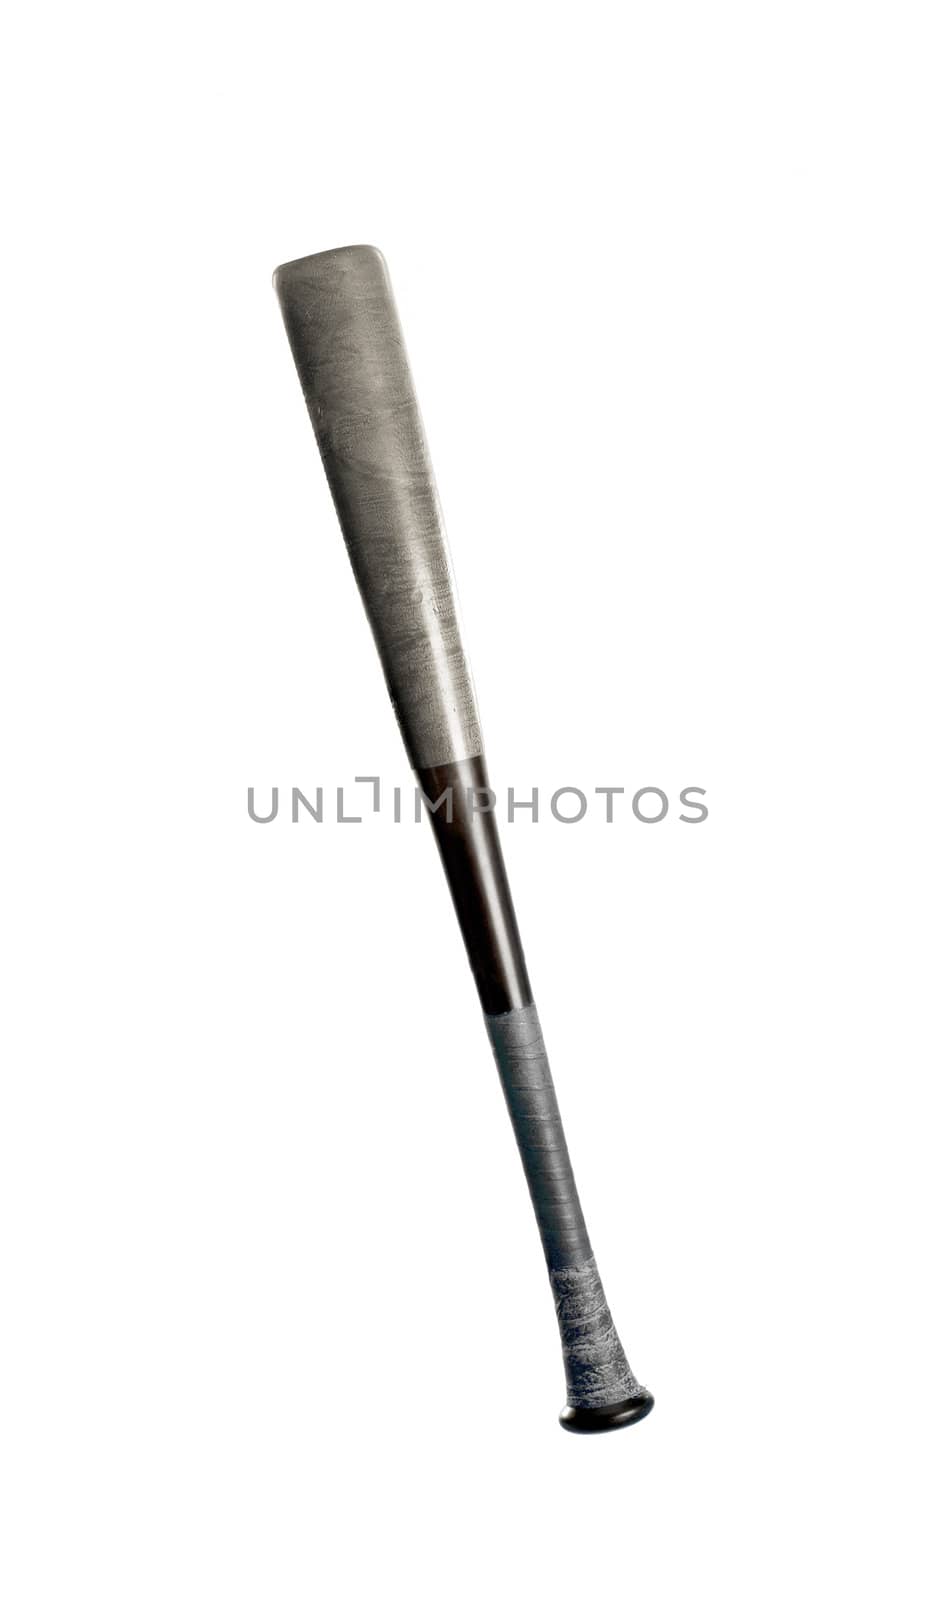 Aluminum baseball bat isolated on white